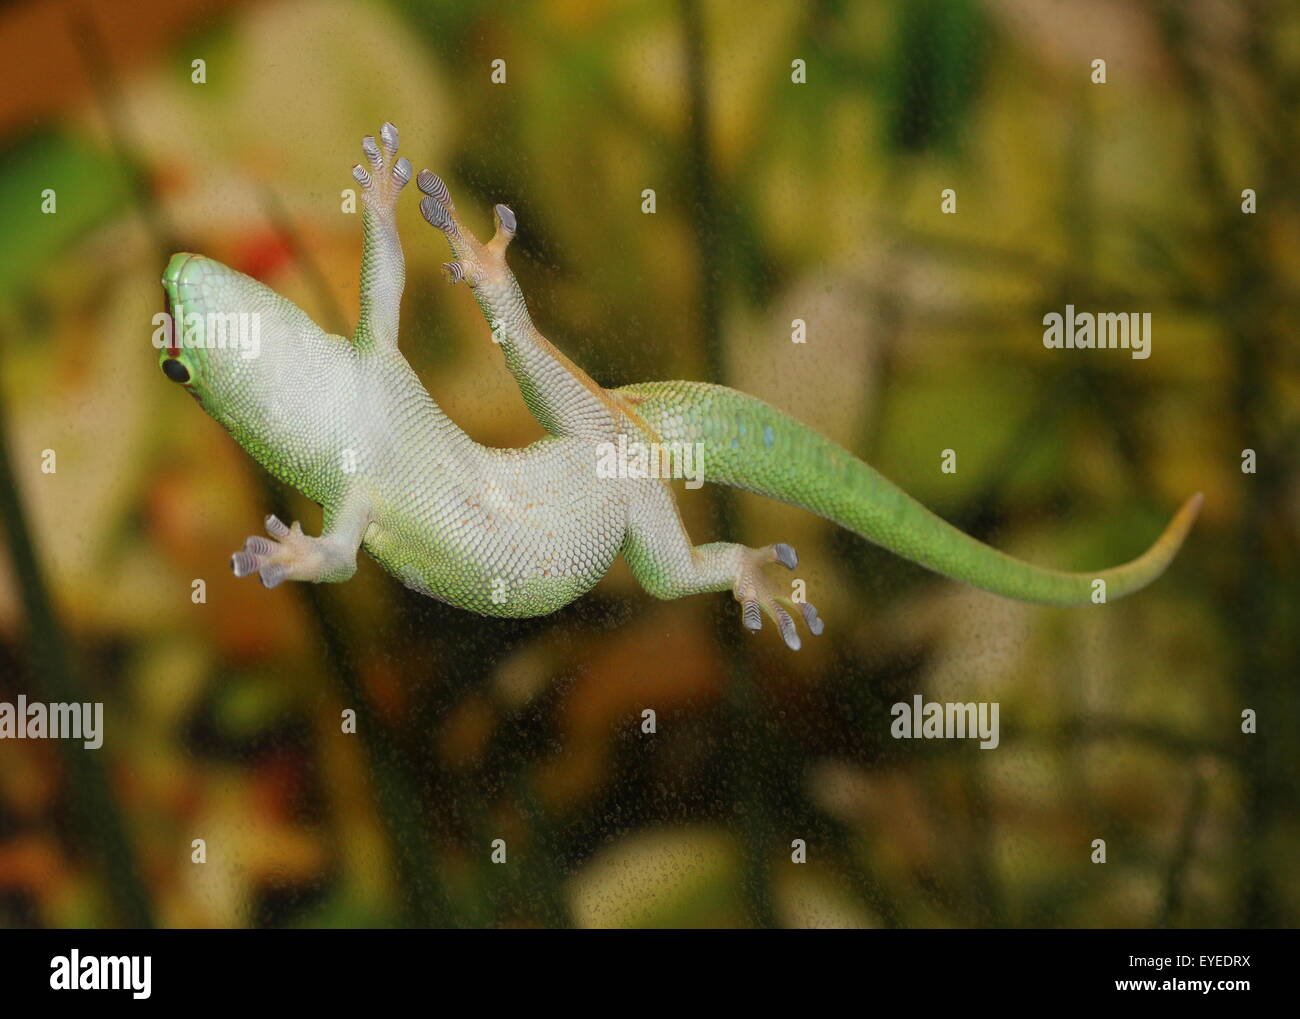 Gecko vert de Madagascar (Phelsuma madagascariensis jour) accroché à une fenêtre en verre avec son orteil sticky pads Banque D'Images